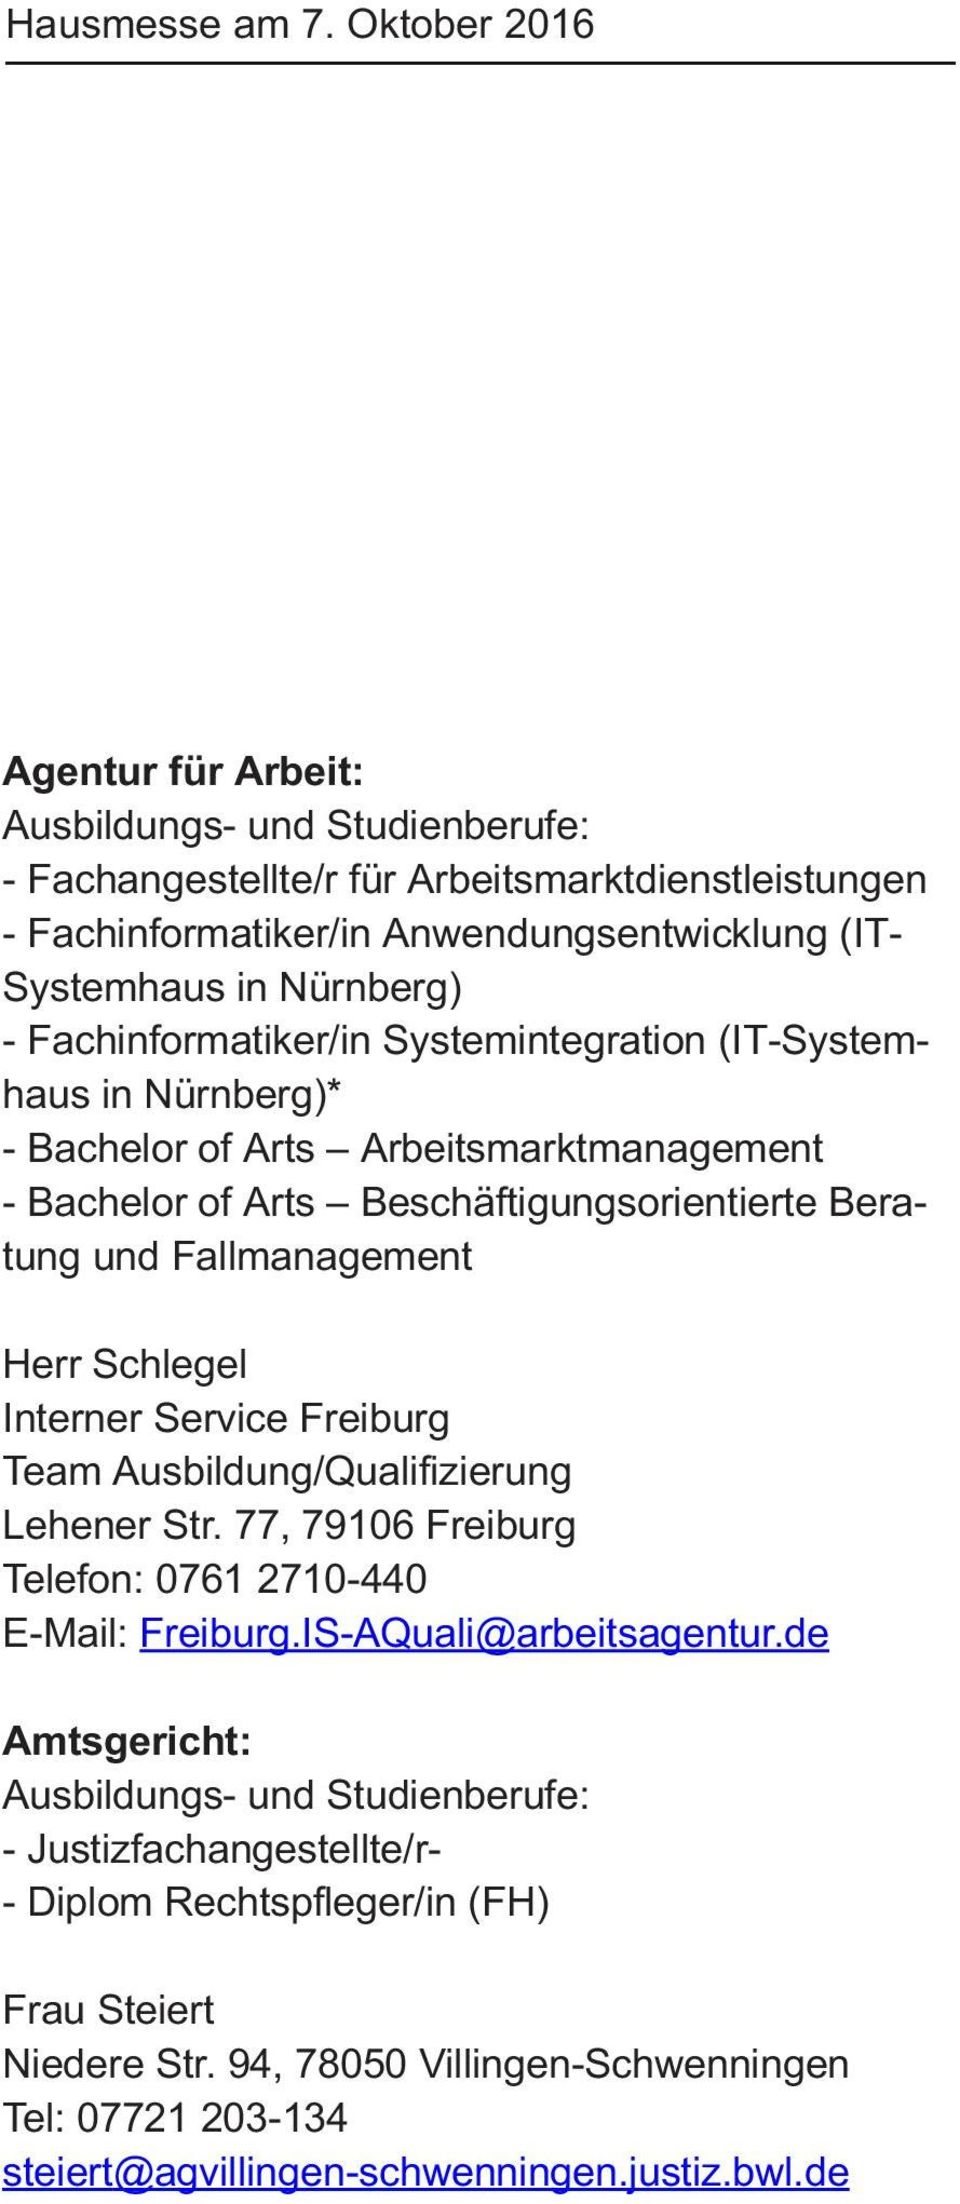 Schlegel Interner Service Freiburg Team Ausbildung/Qualifizierung Lehener Str. 77, 79106 Freiburg Telefon: 0761 2710-440 E-Mail: Freiburg.IS-AQuali@arbeitsagentur.